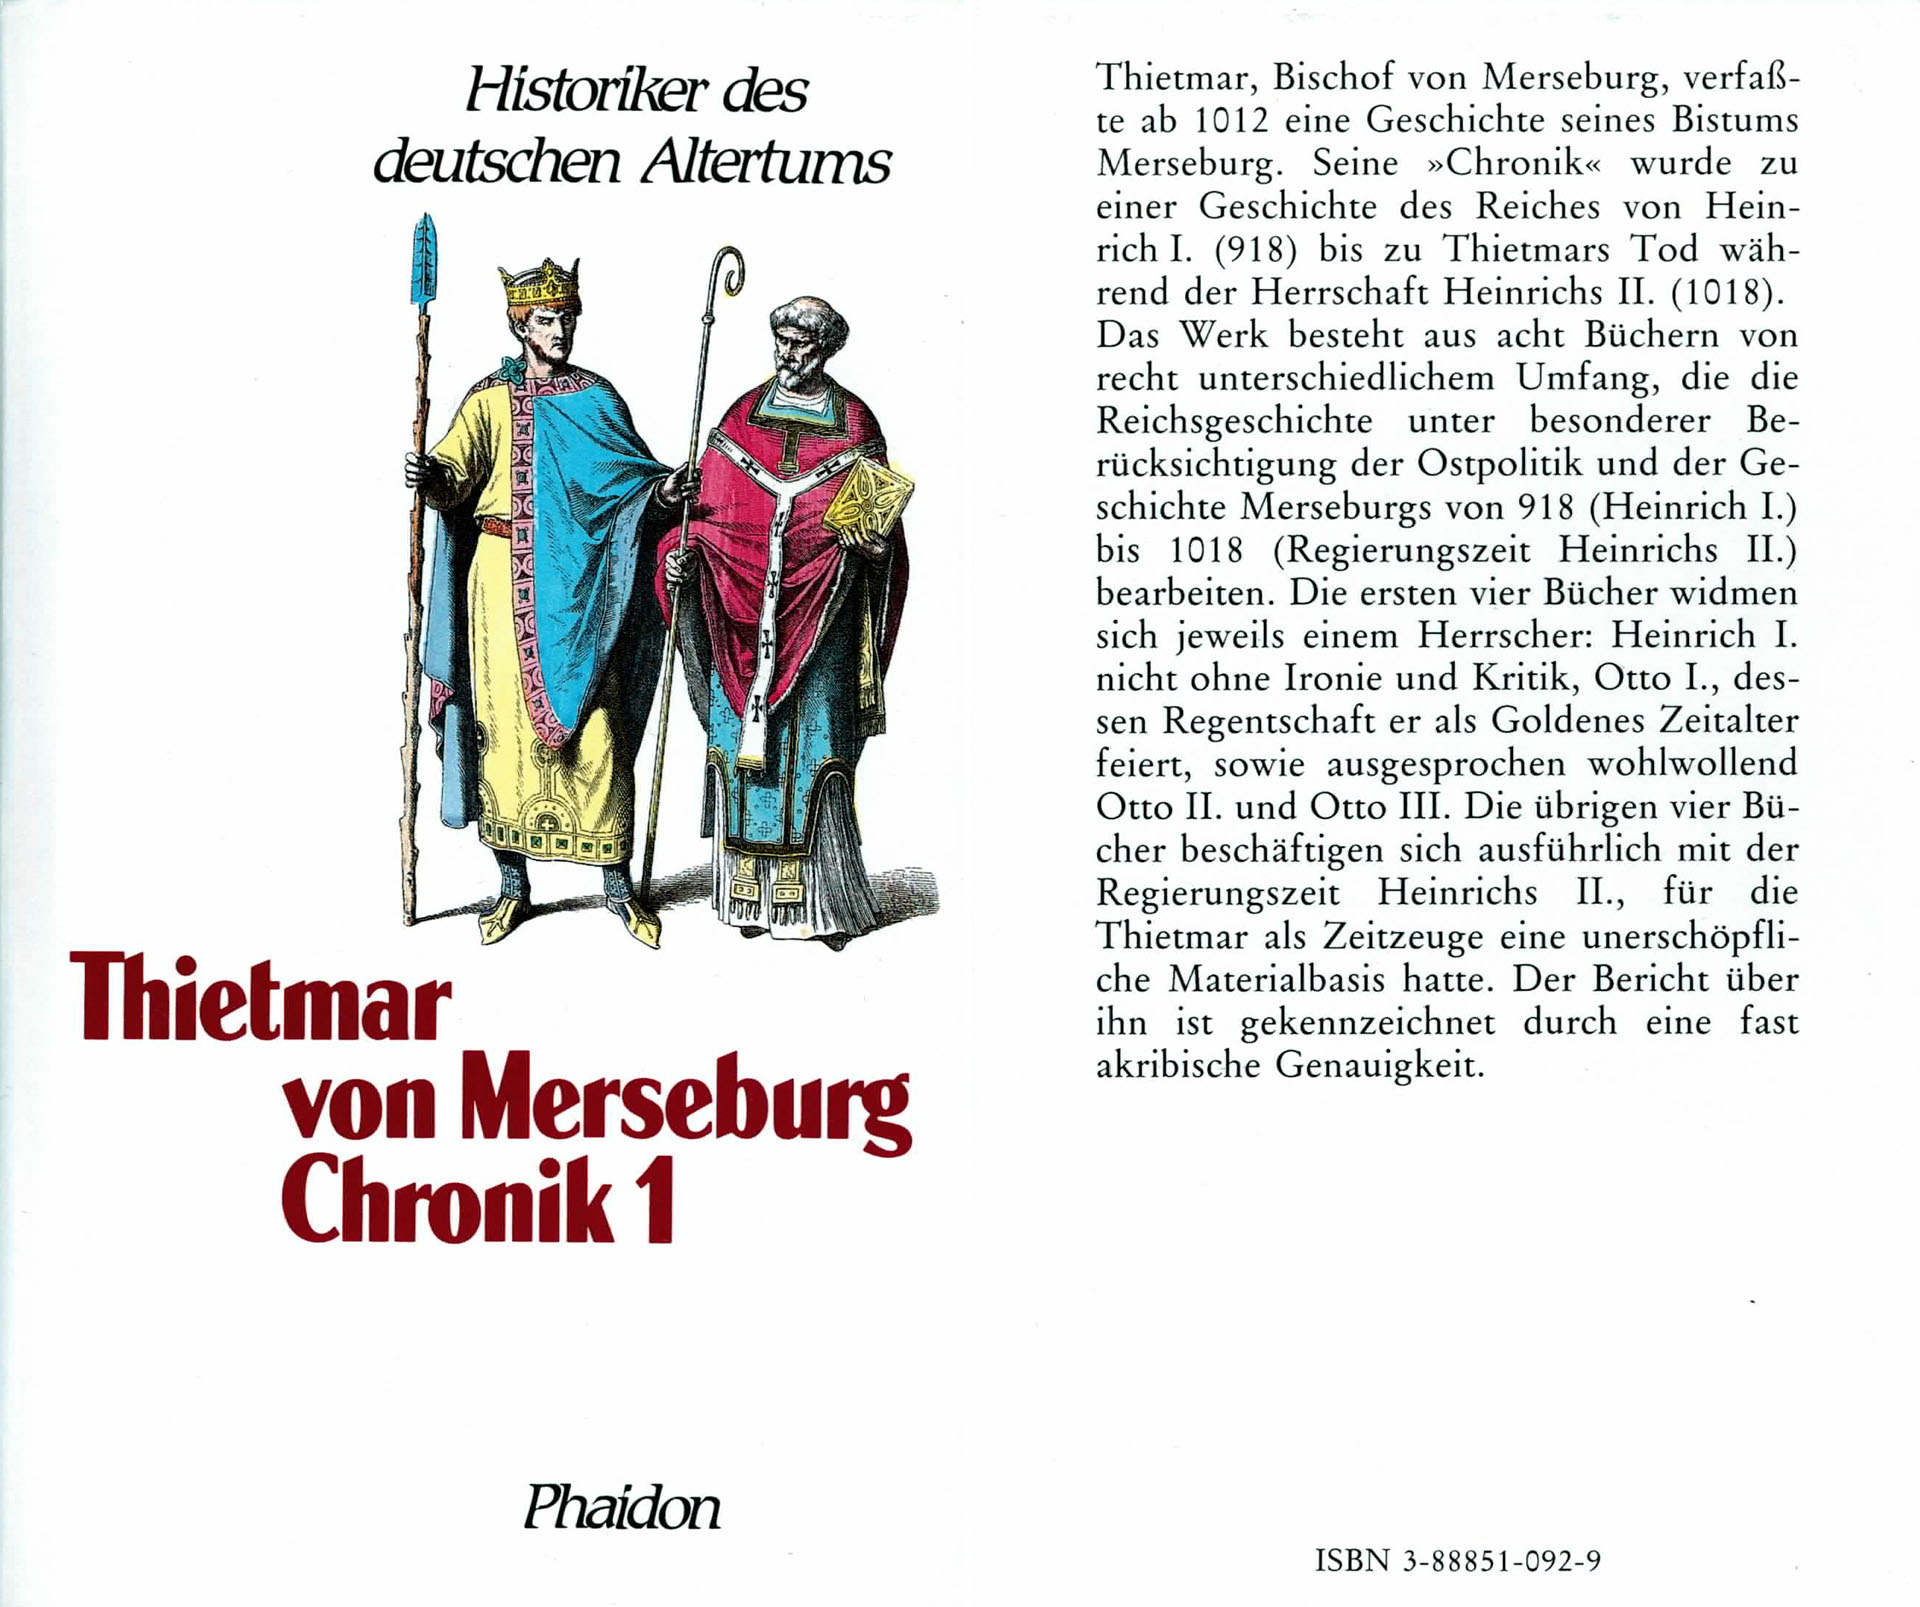 Historiker des deutschen Altertums - Thietmar von Merseburg - Chronik II - Huf, Franz (Hersgb)